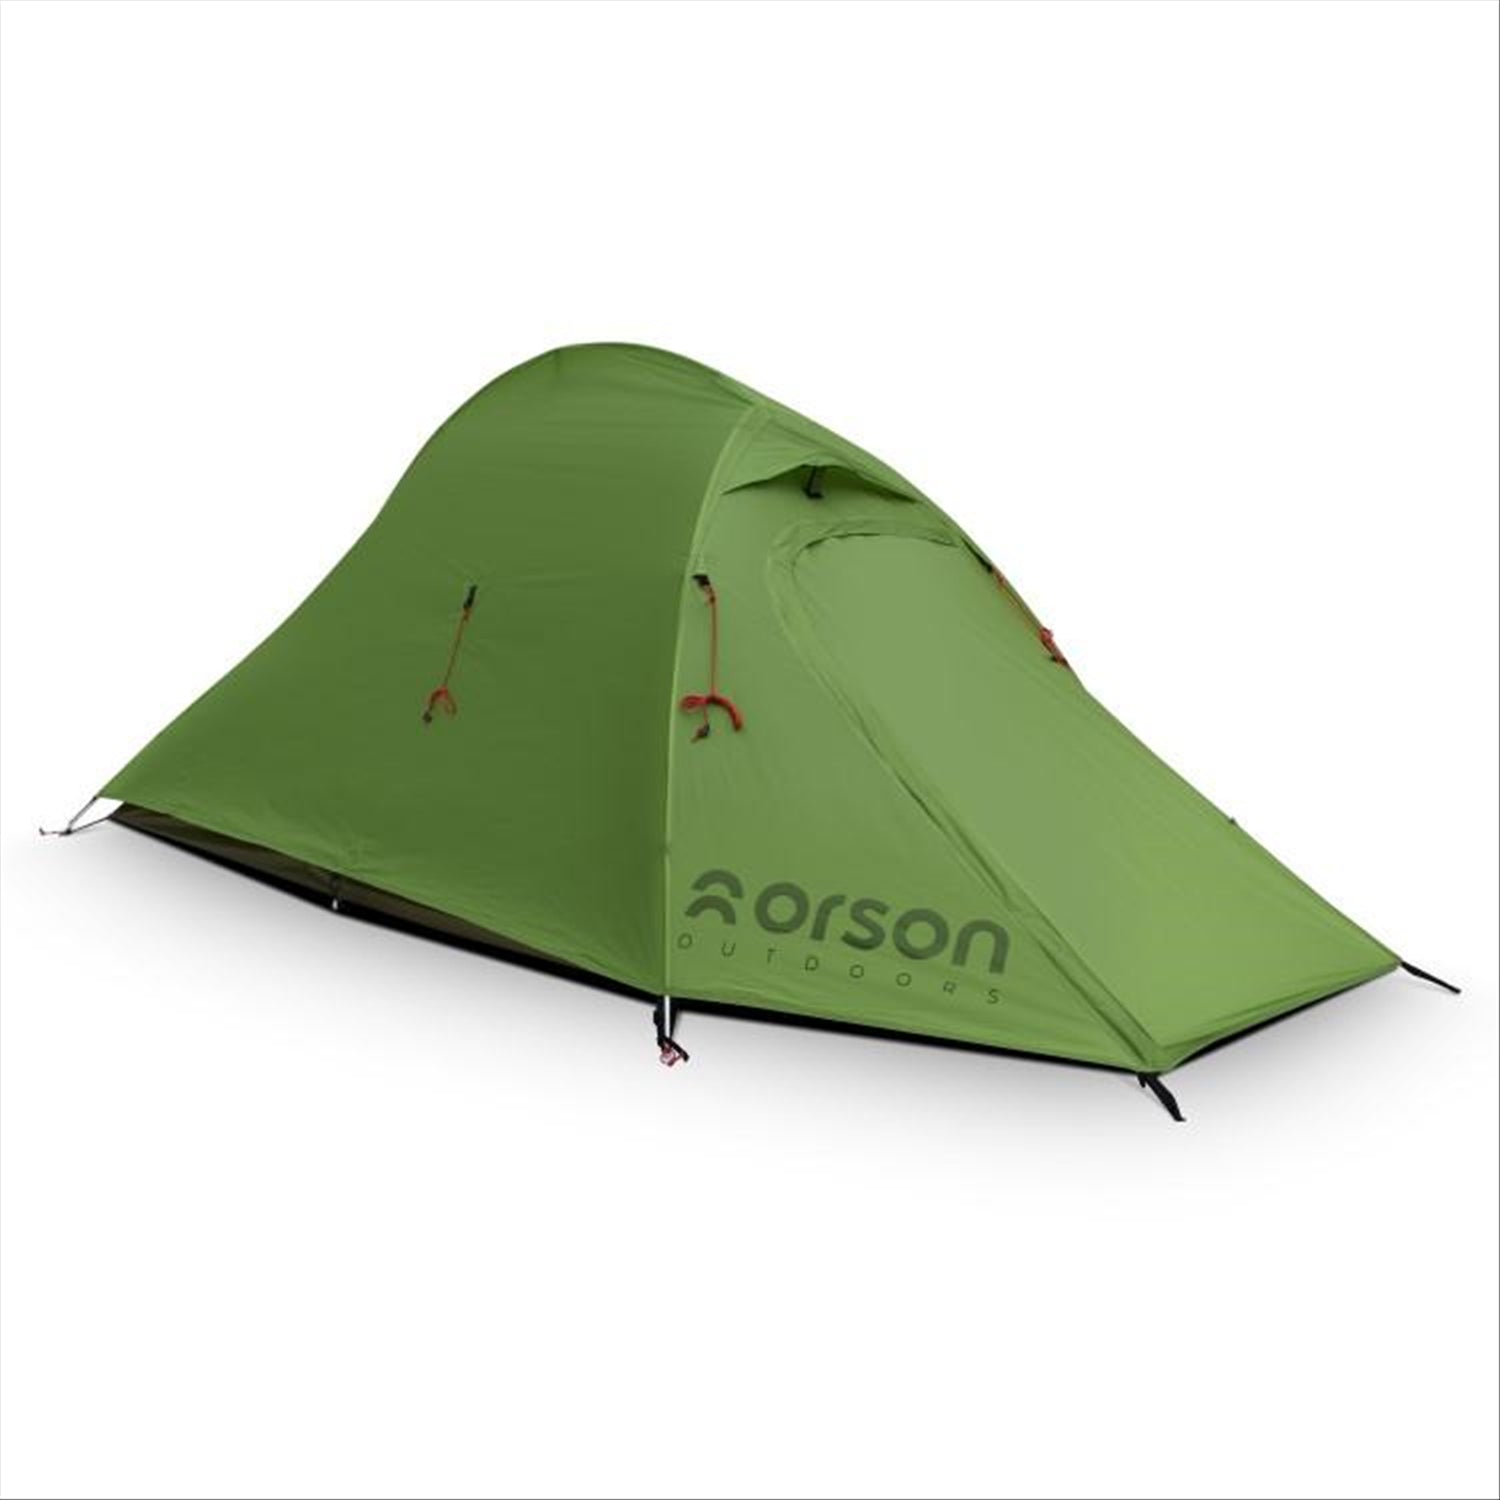 Tracker 2 - Ripstop Silnylon 2 Person Camping Tent 1.7kg